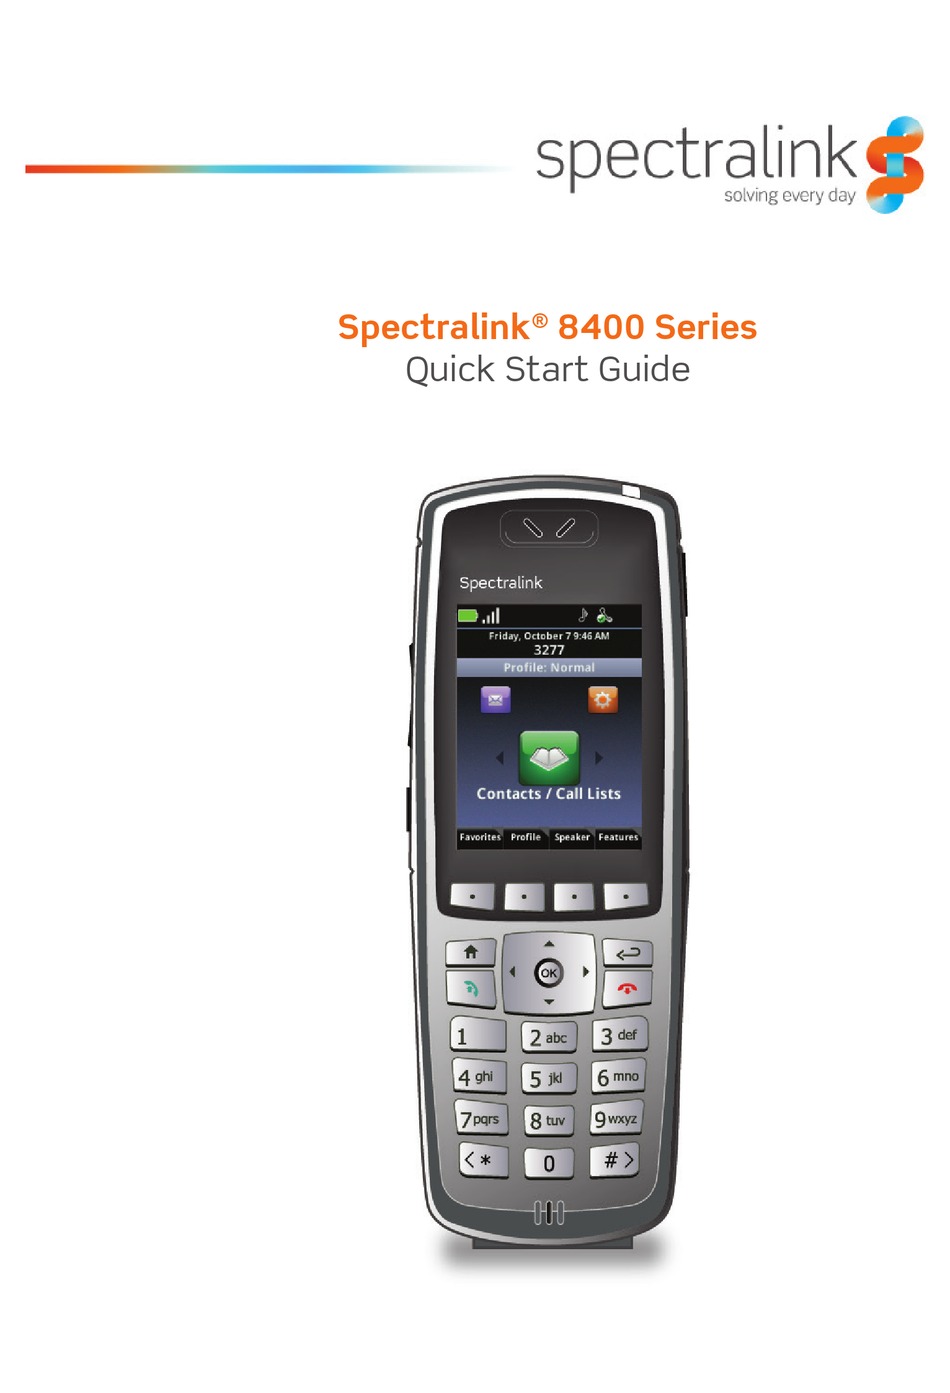 SPECTRALINK 8400 SERIES QUICK START MANUAL Pdf Download | ManualsLib